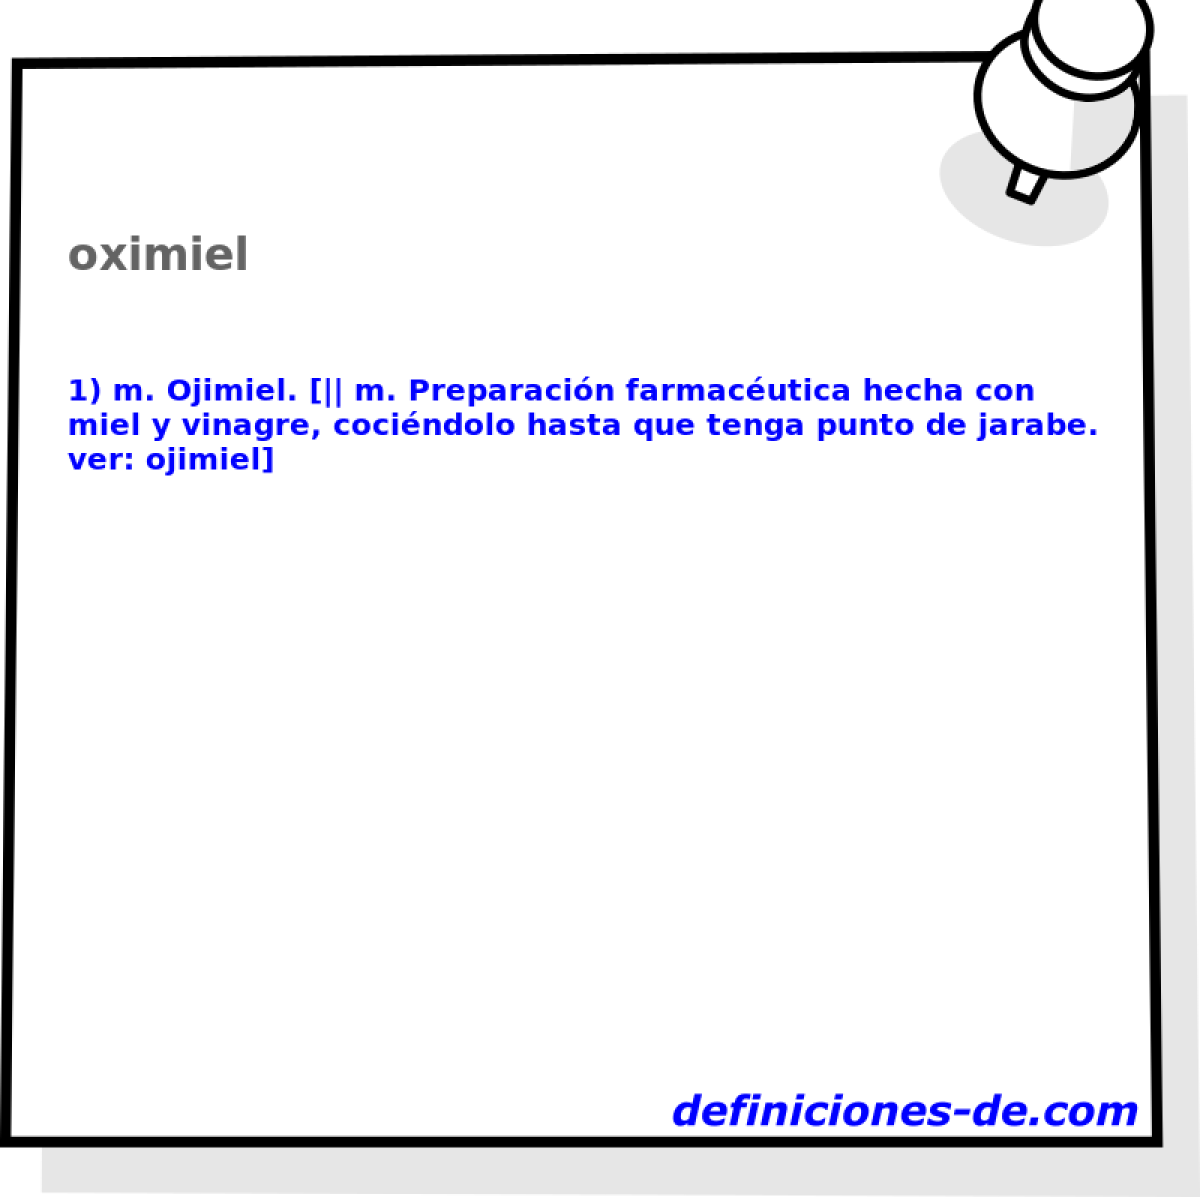 oximiel 